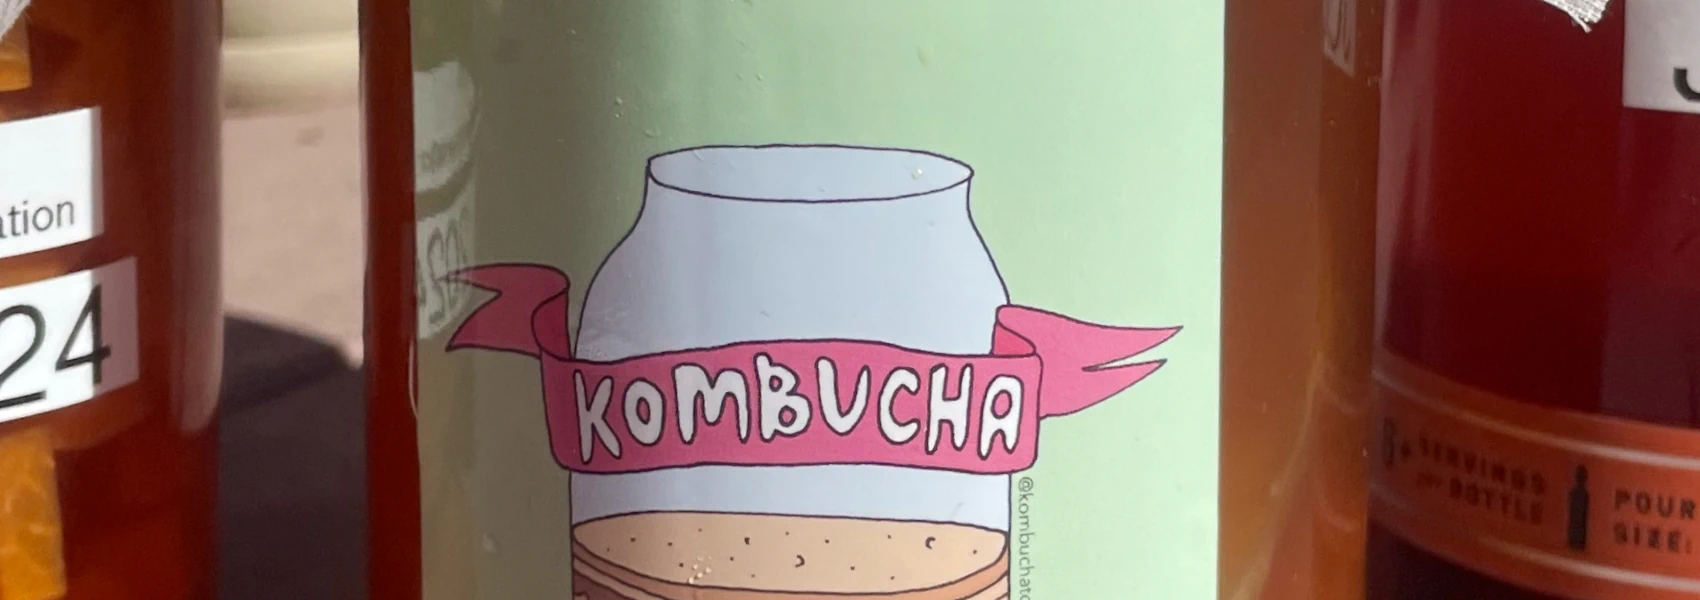 Hero image for Kombucha experiment